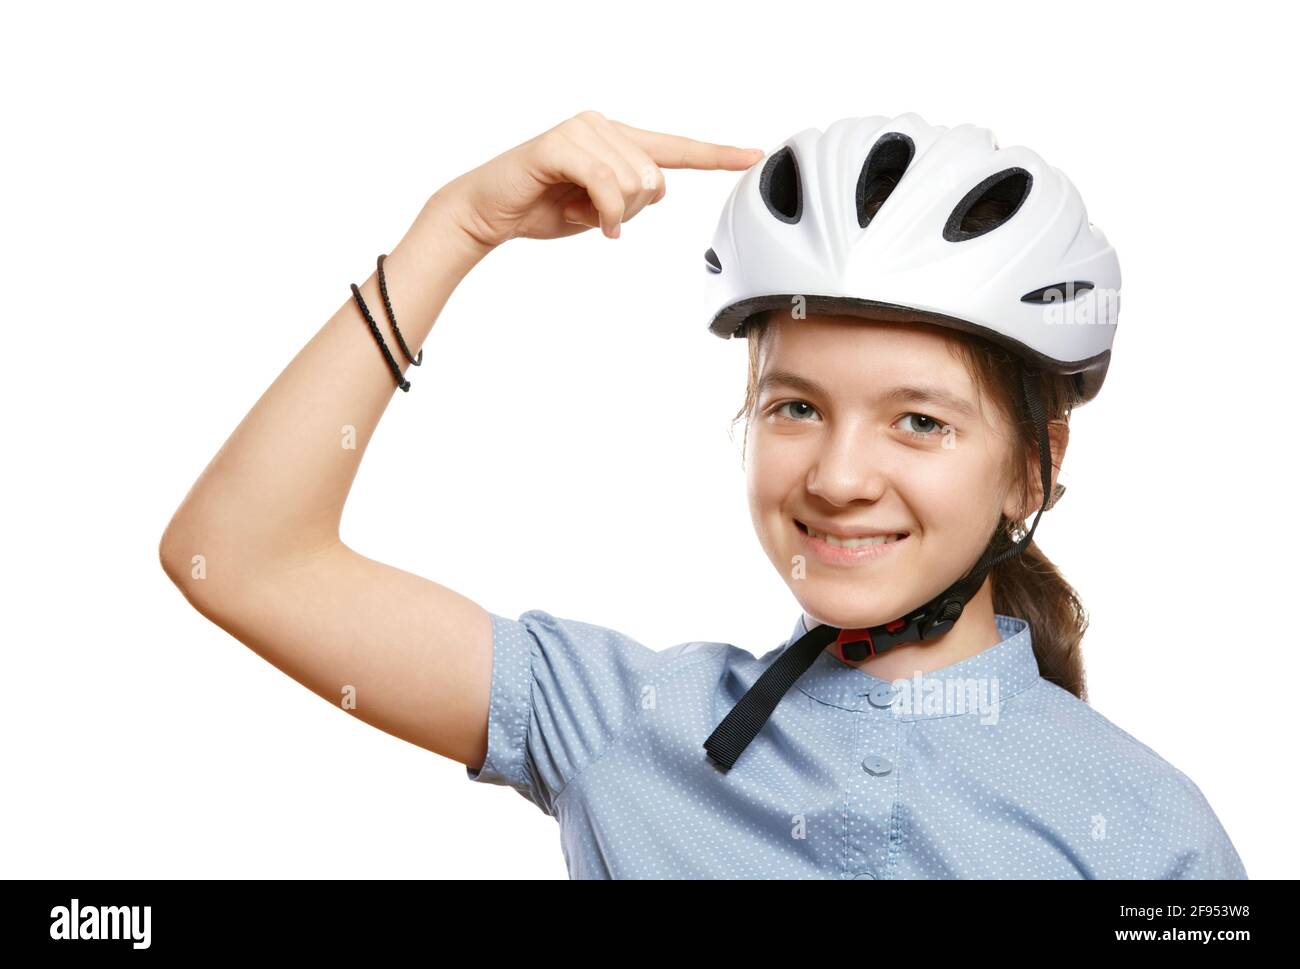 Das junge Mädchen in einem weißen Fahrradhelm zeigt auf einen Helm, isoliert auf Weiß. Stockfoto